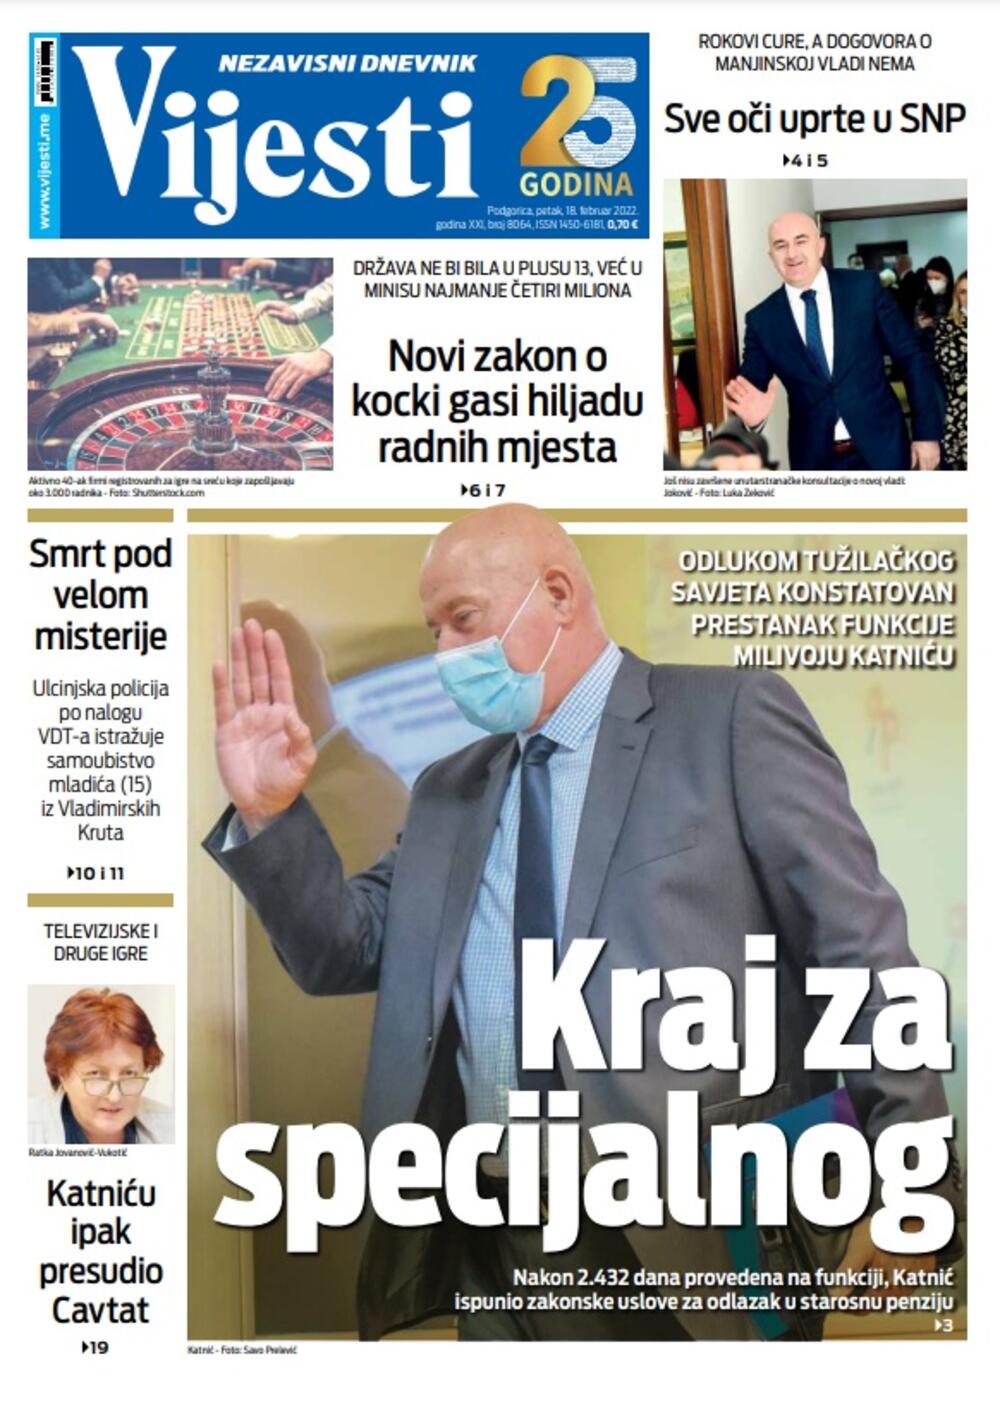 Naslovna strana "Vijesti" za 18. februar 2022., Foto: Vijesti